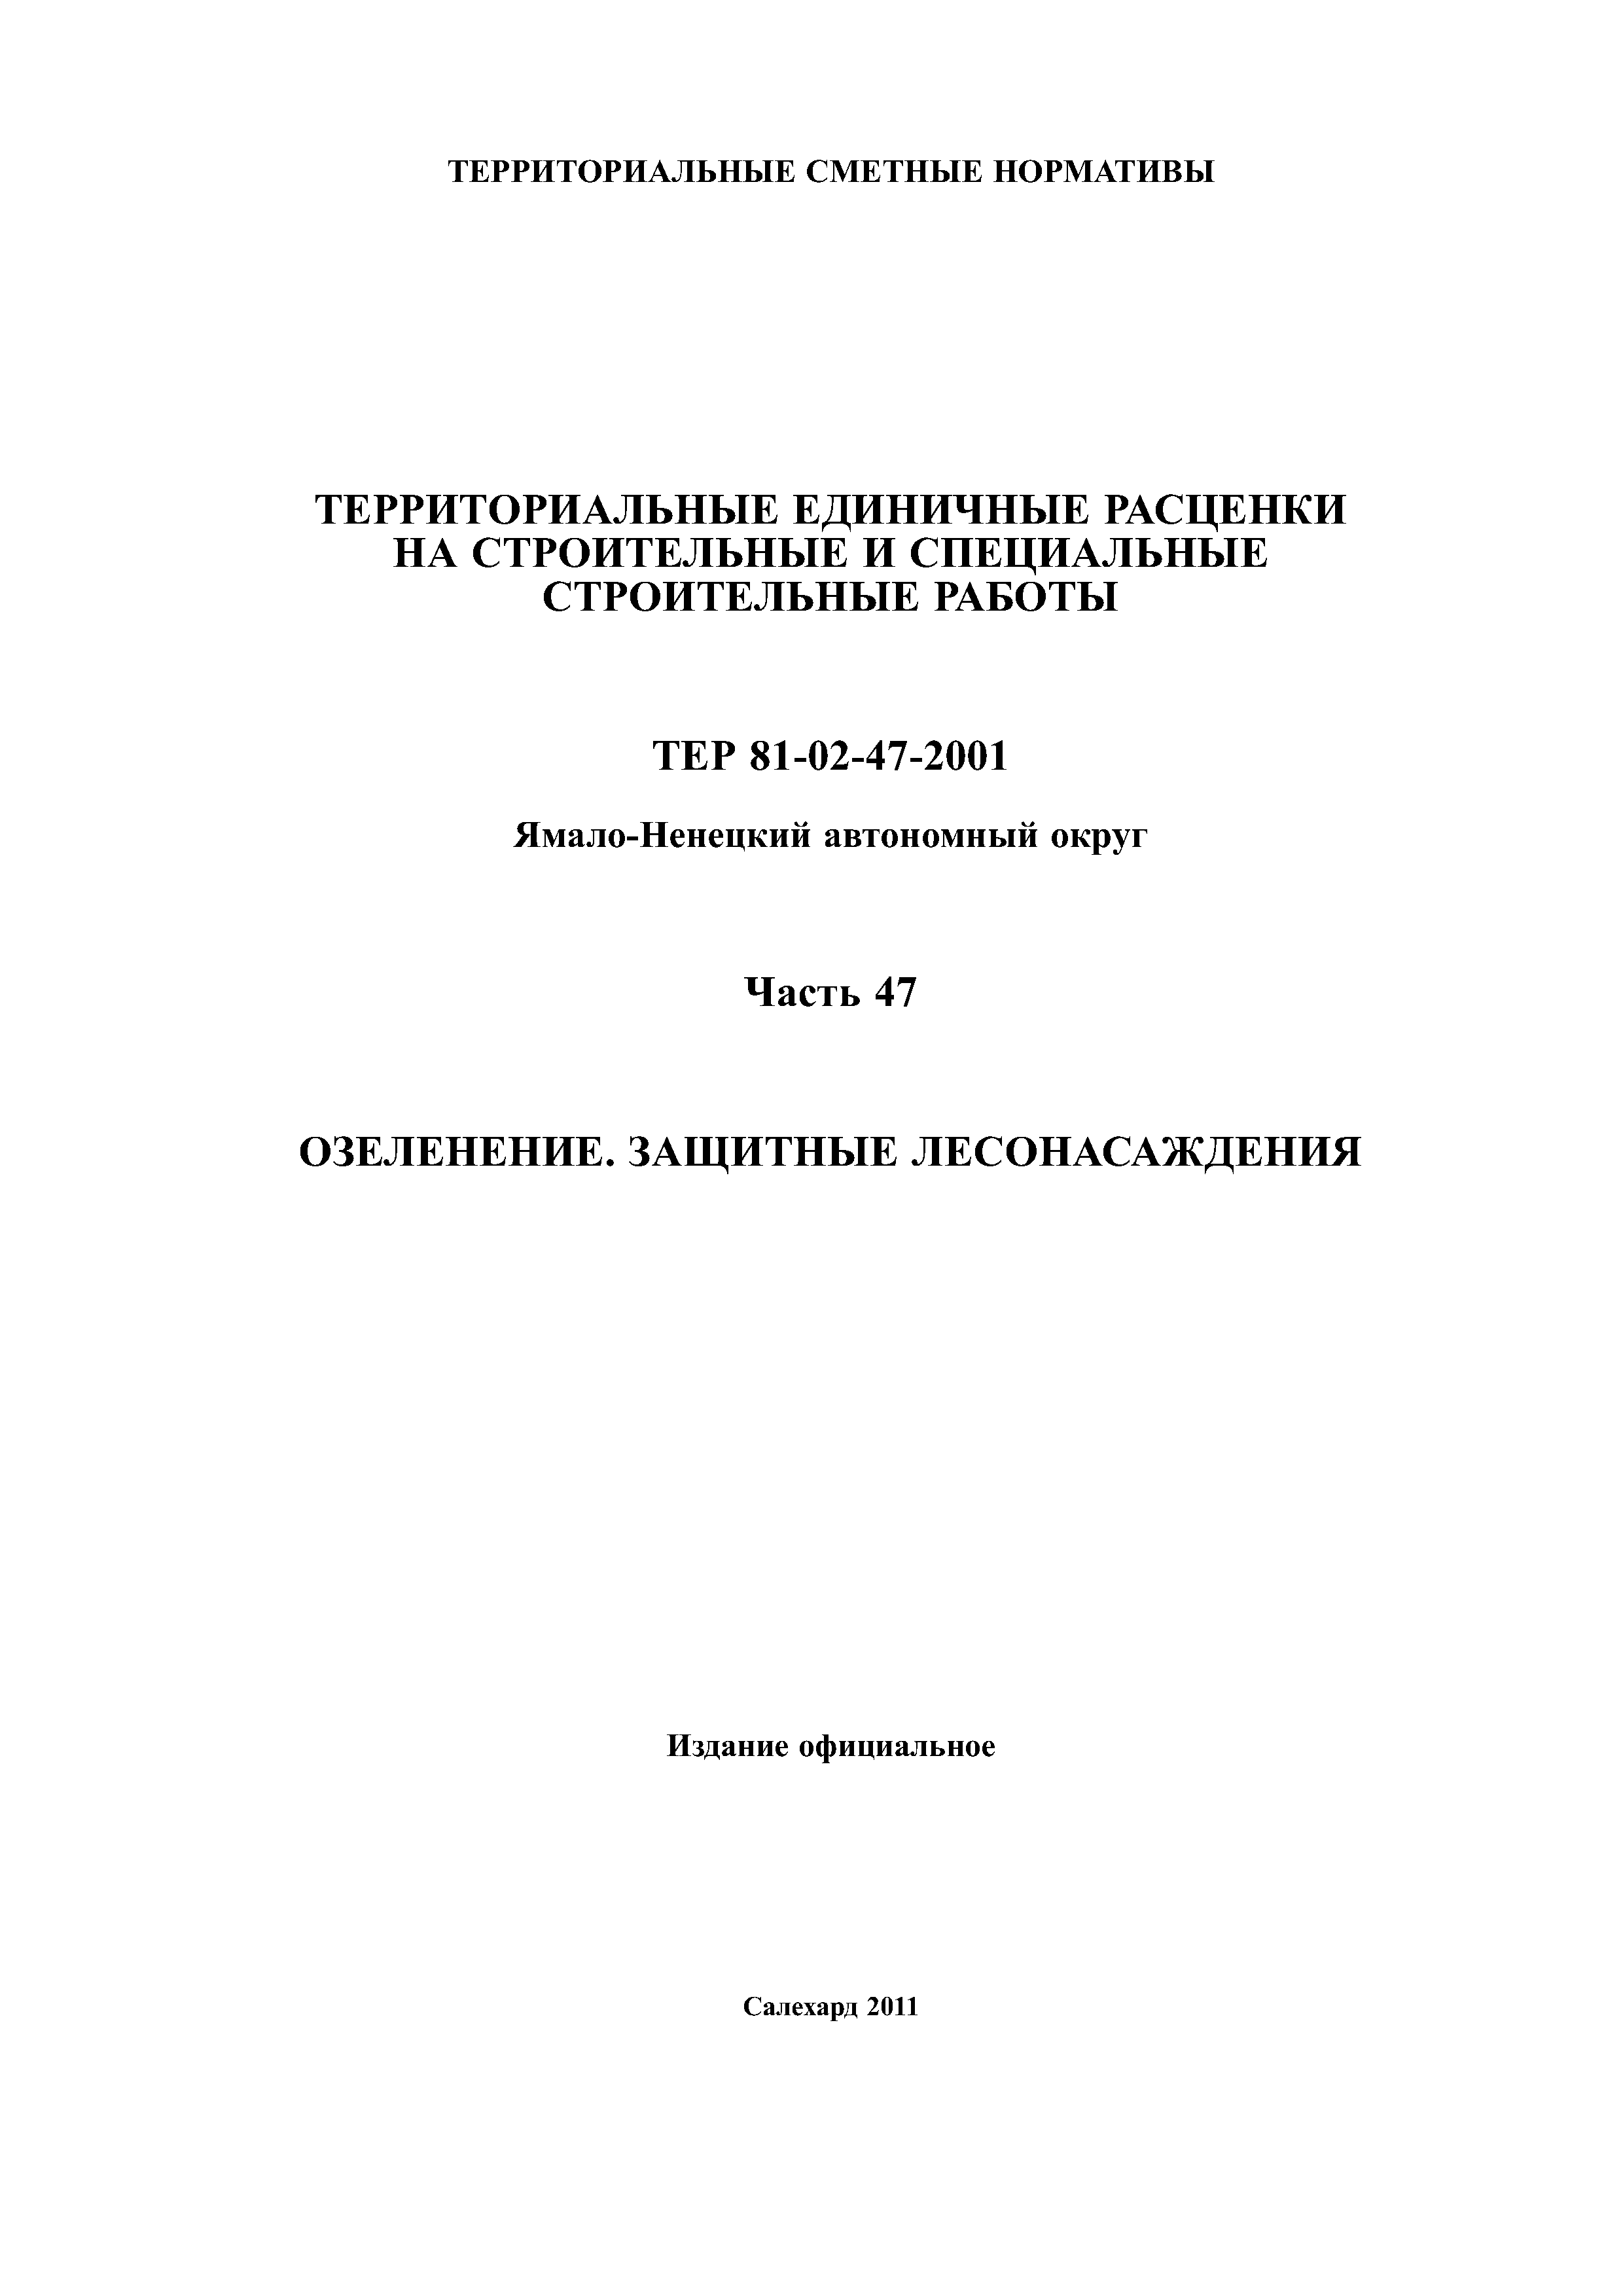 ТЕР Ямало-Ненецкий автономный округ 47-2001